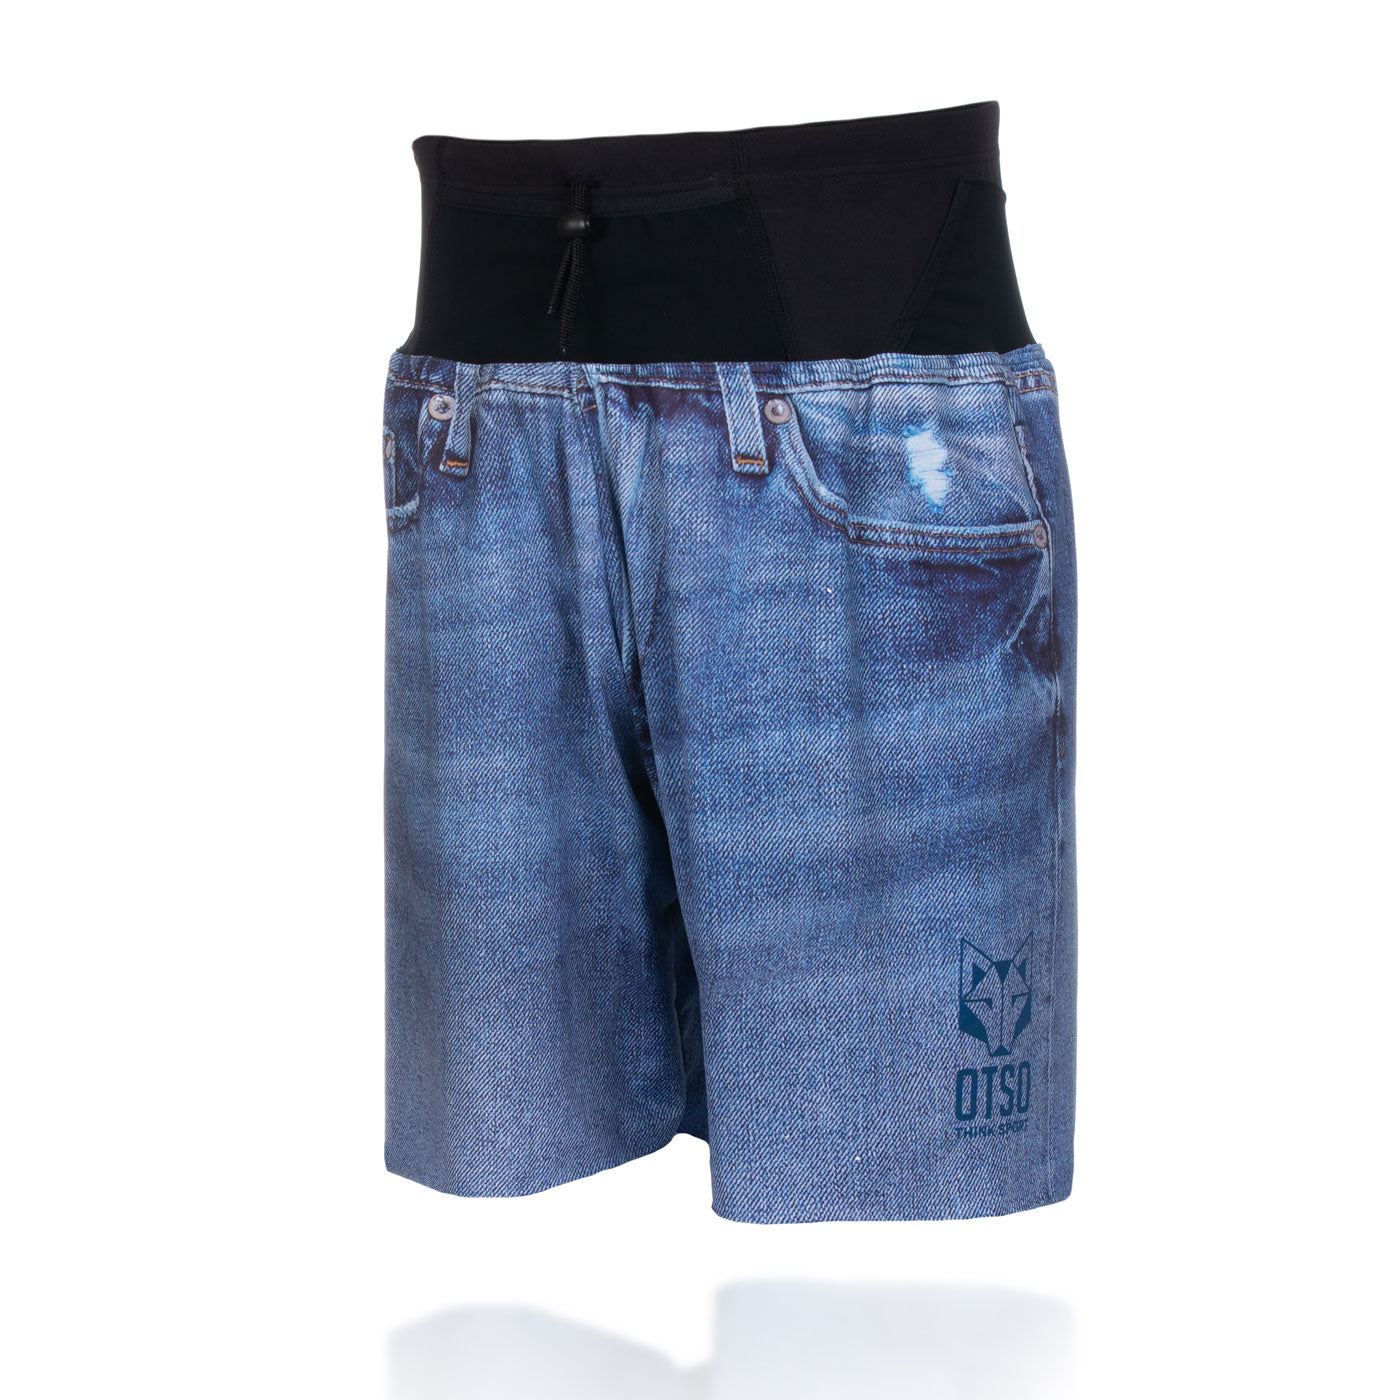 Pantalón corto - blue jeans